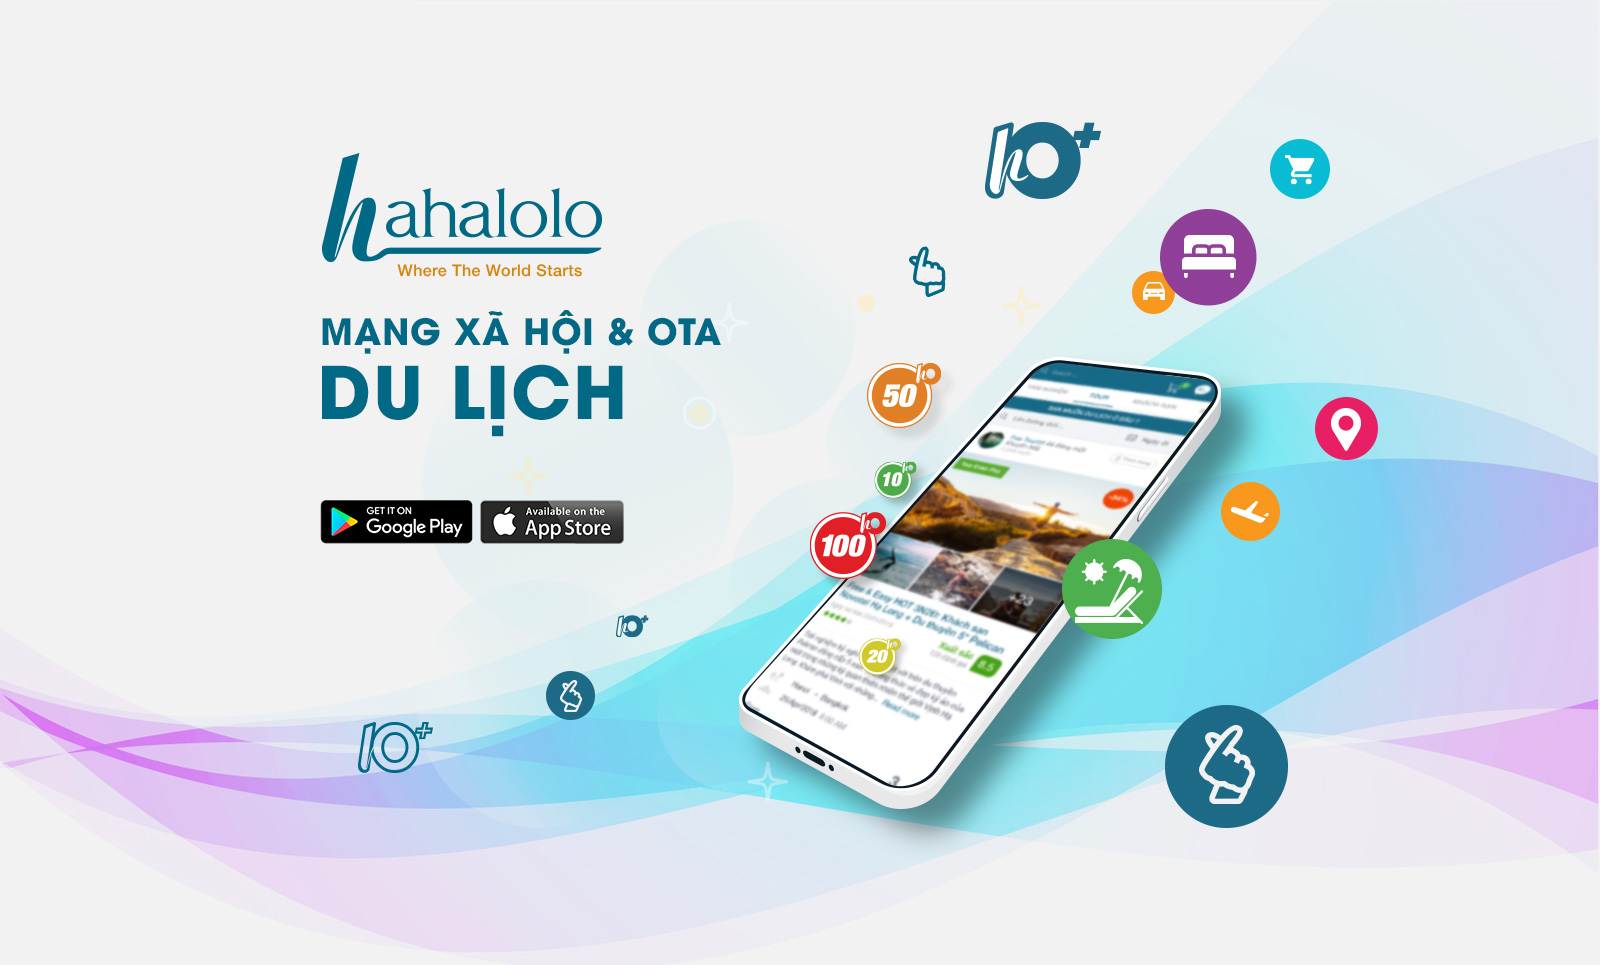 Ra mắt mạng xã hội chuyên về du lịch Hahalolo
